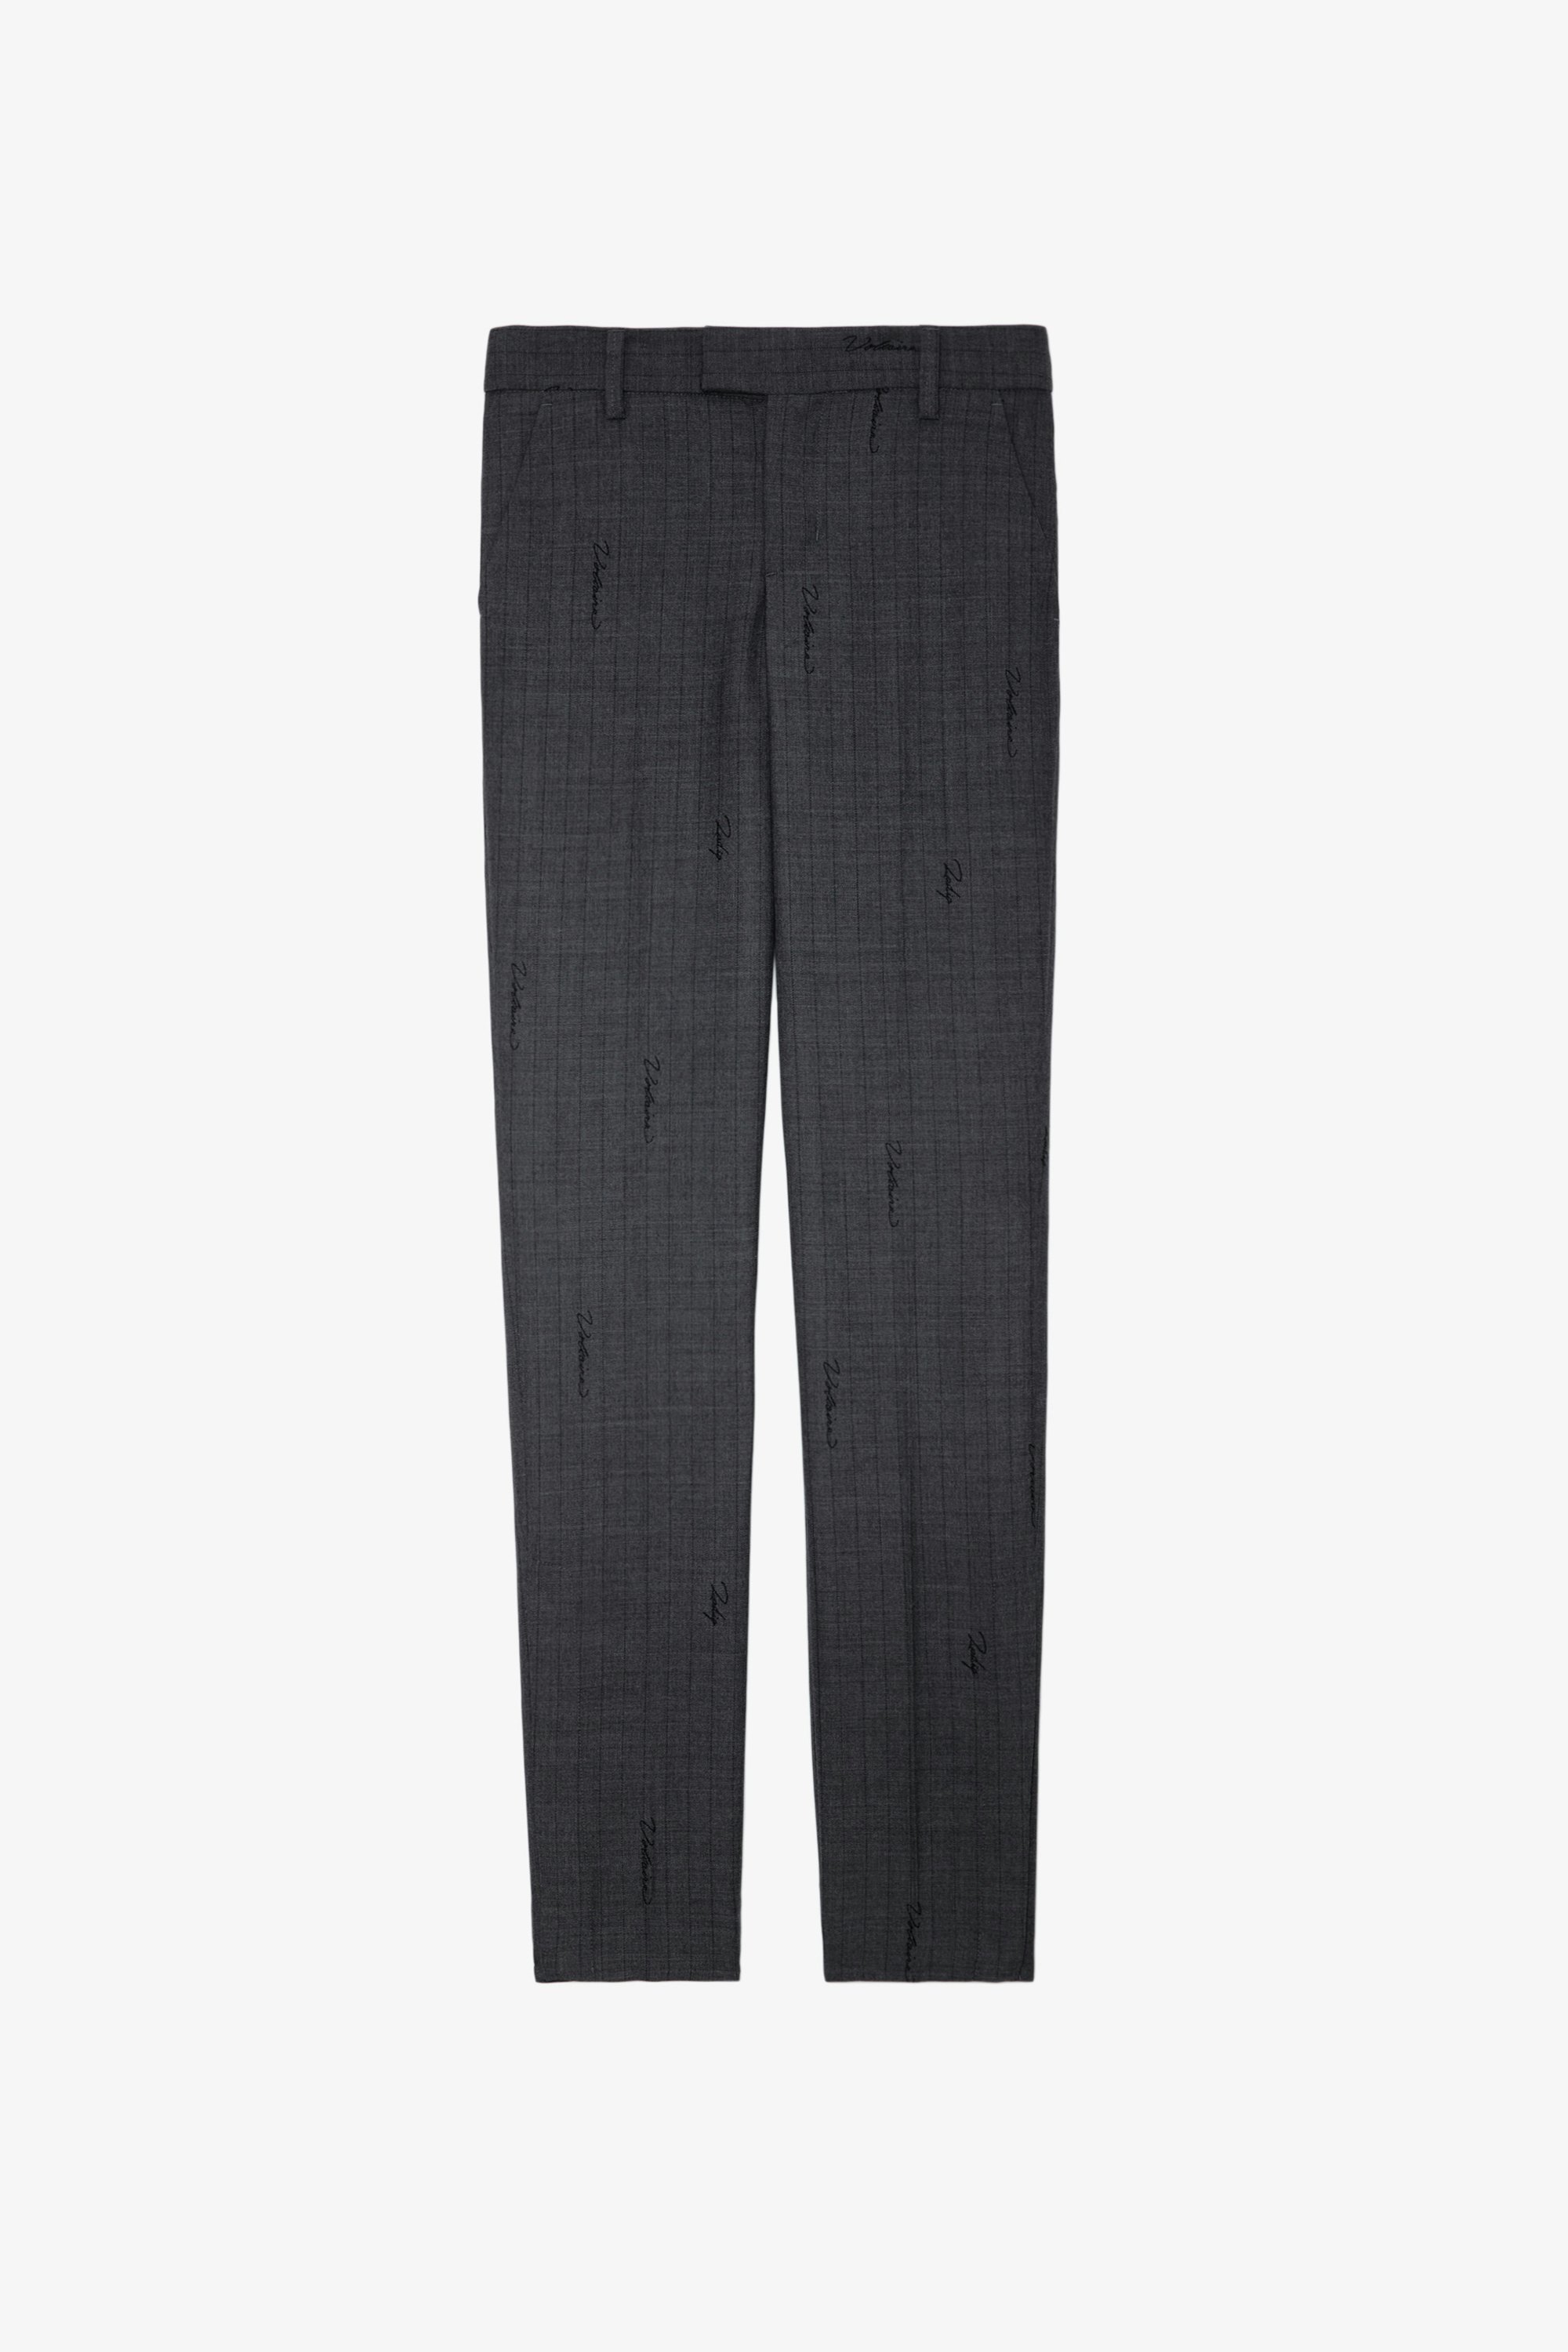 Pantalon Prune - Pantalon de tailleur anthracite à rayures, monogramme et ourlets zippés.